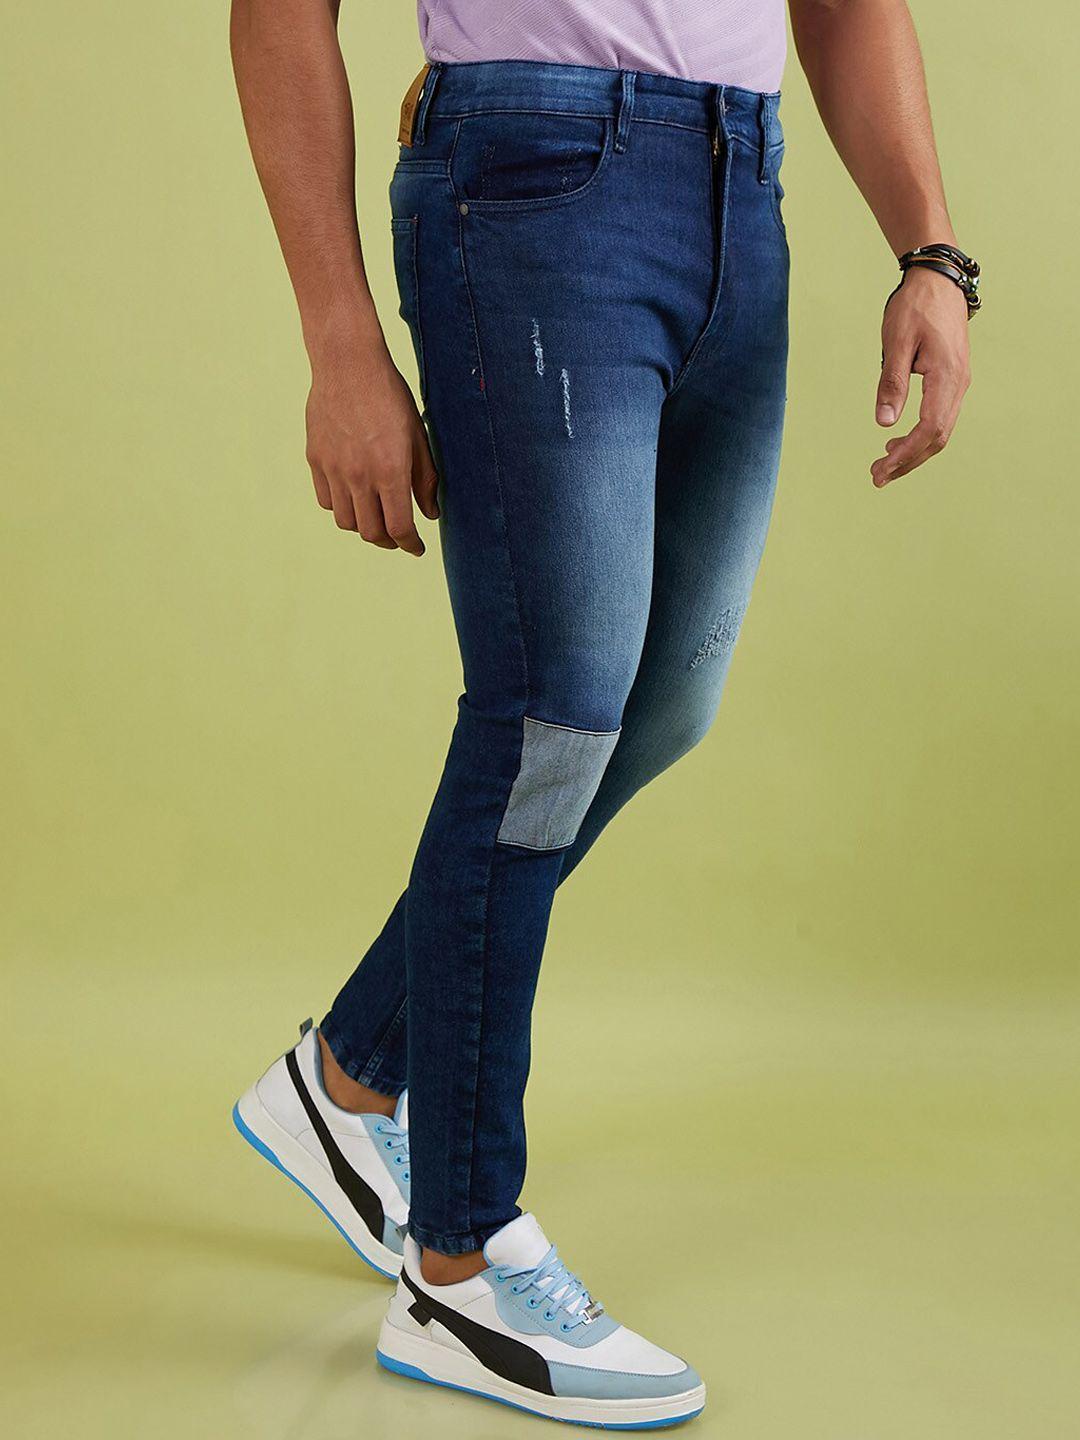 Campus Sutra Men Blue Smart Slim Fit Low Distress Light Fade Cotton Jeans